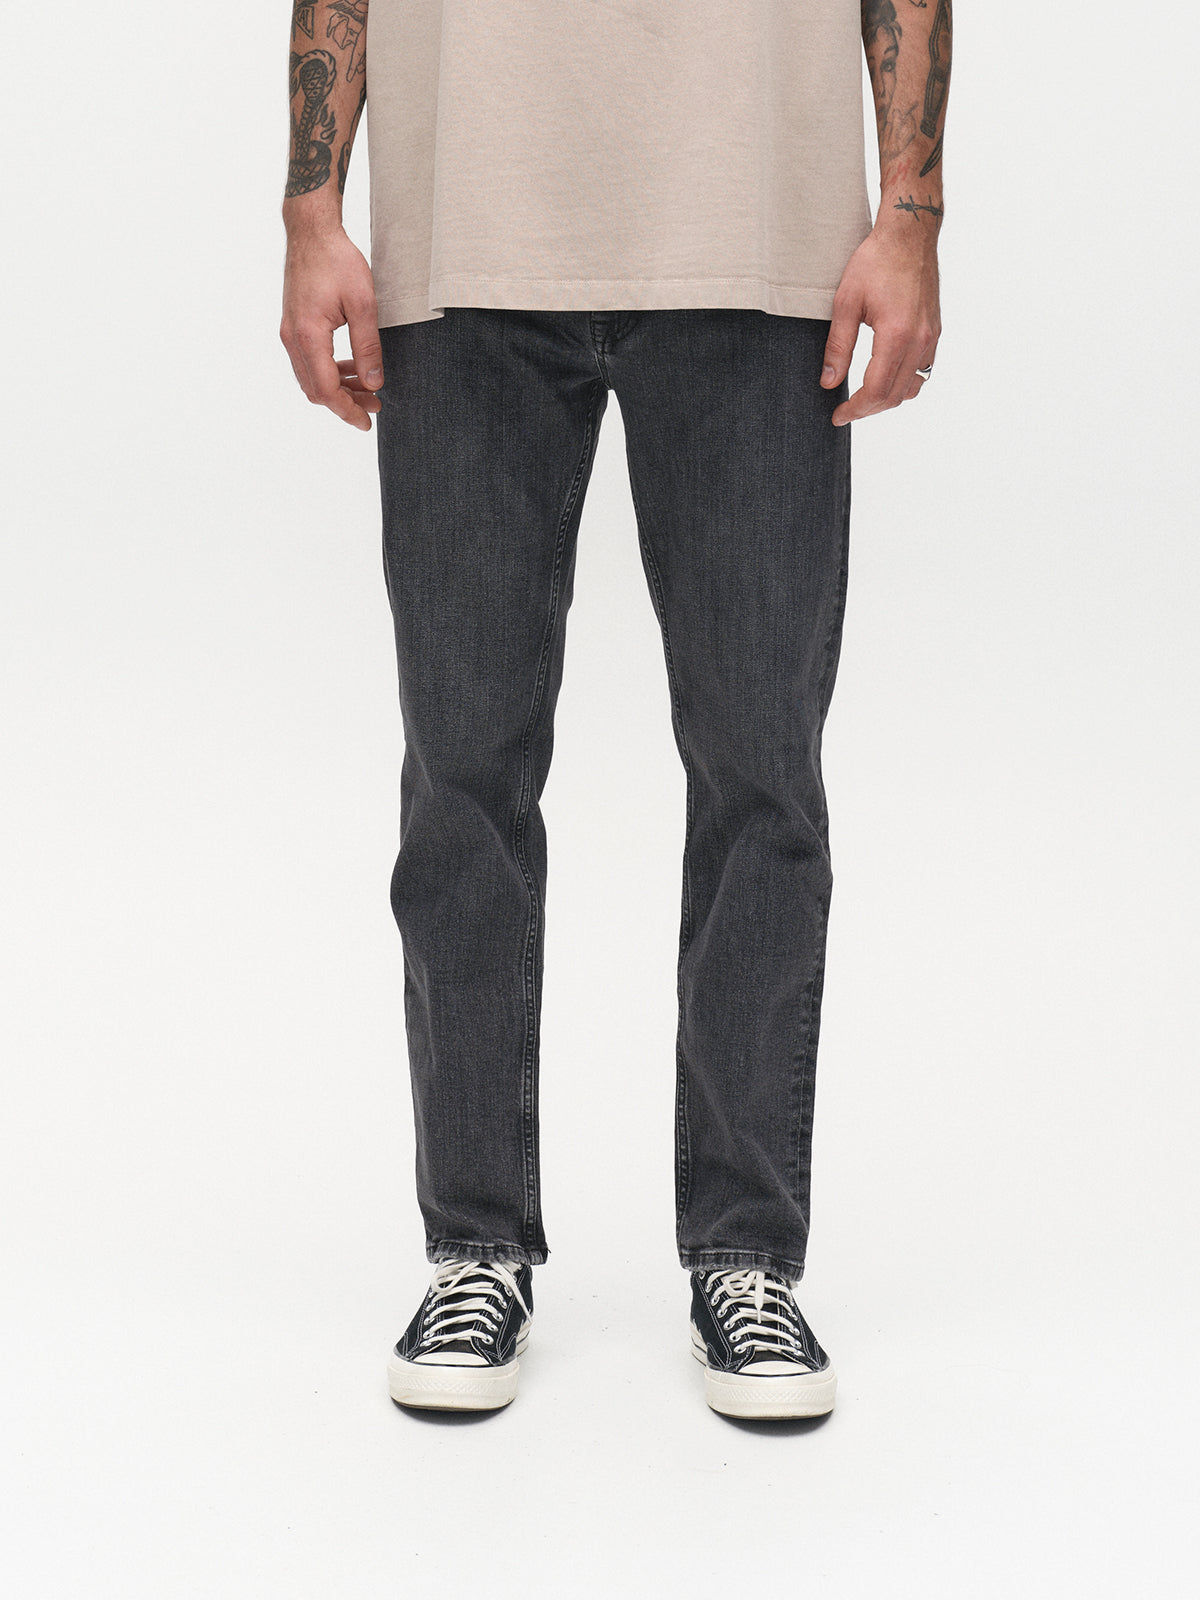 Marc jeans F1011 black denim - Gabba